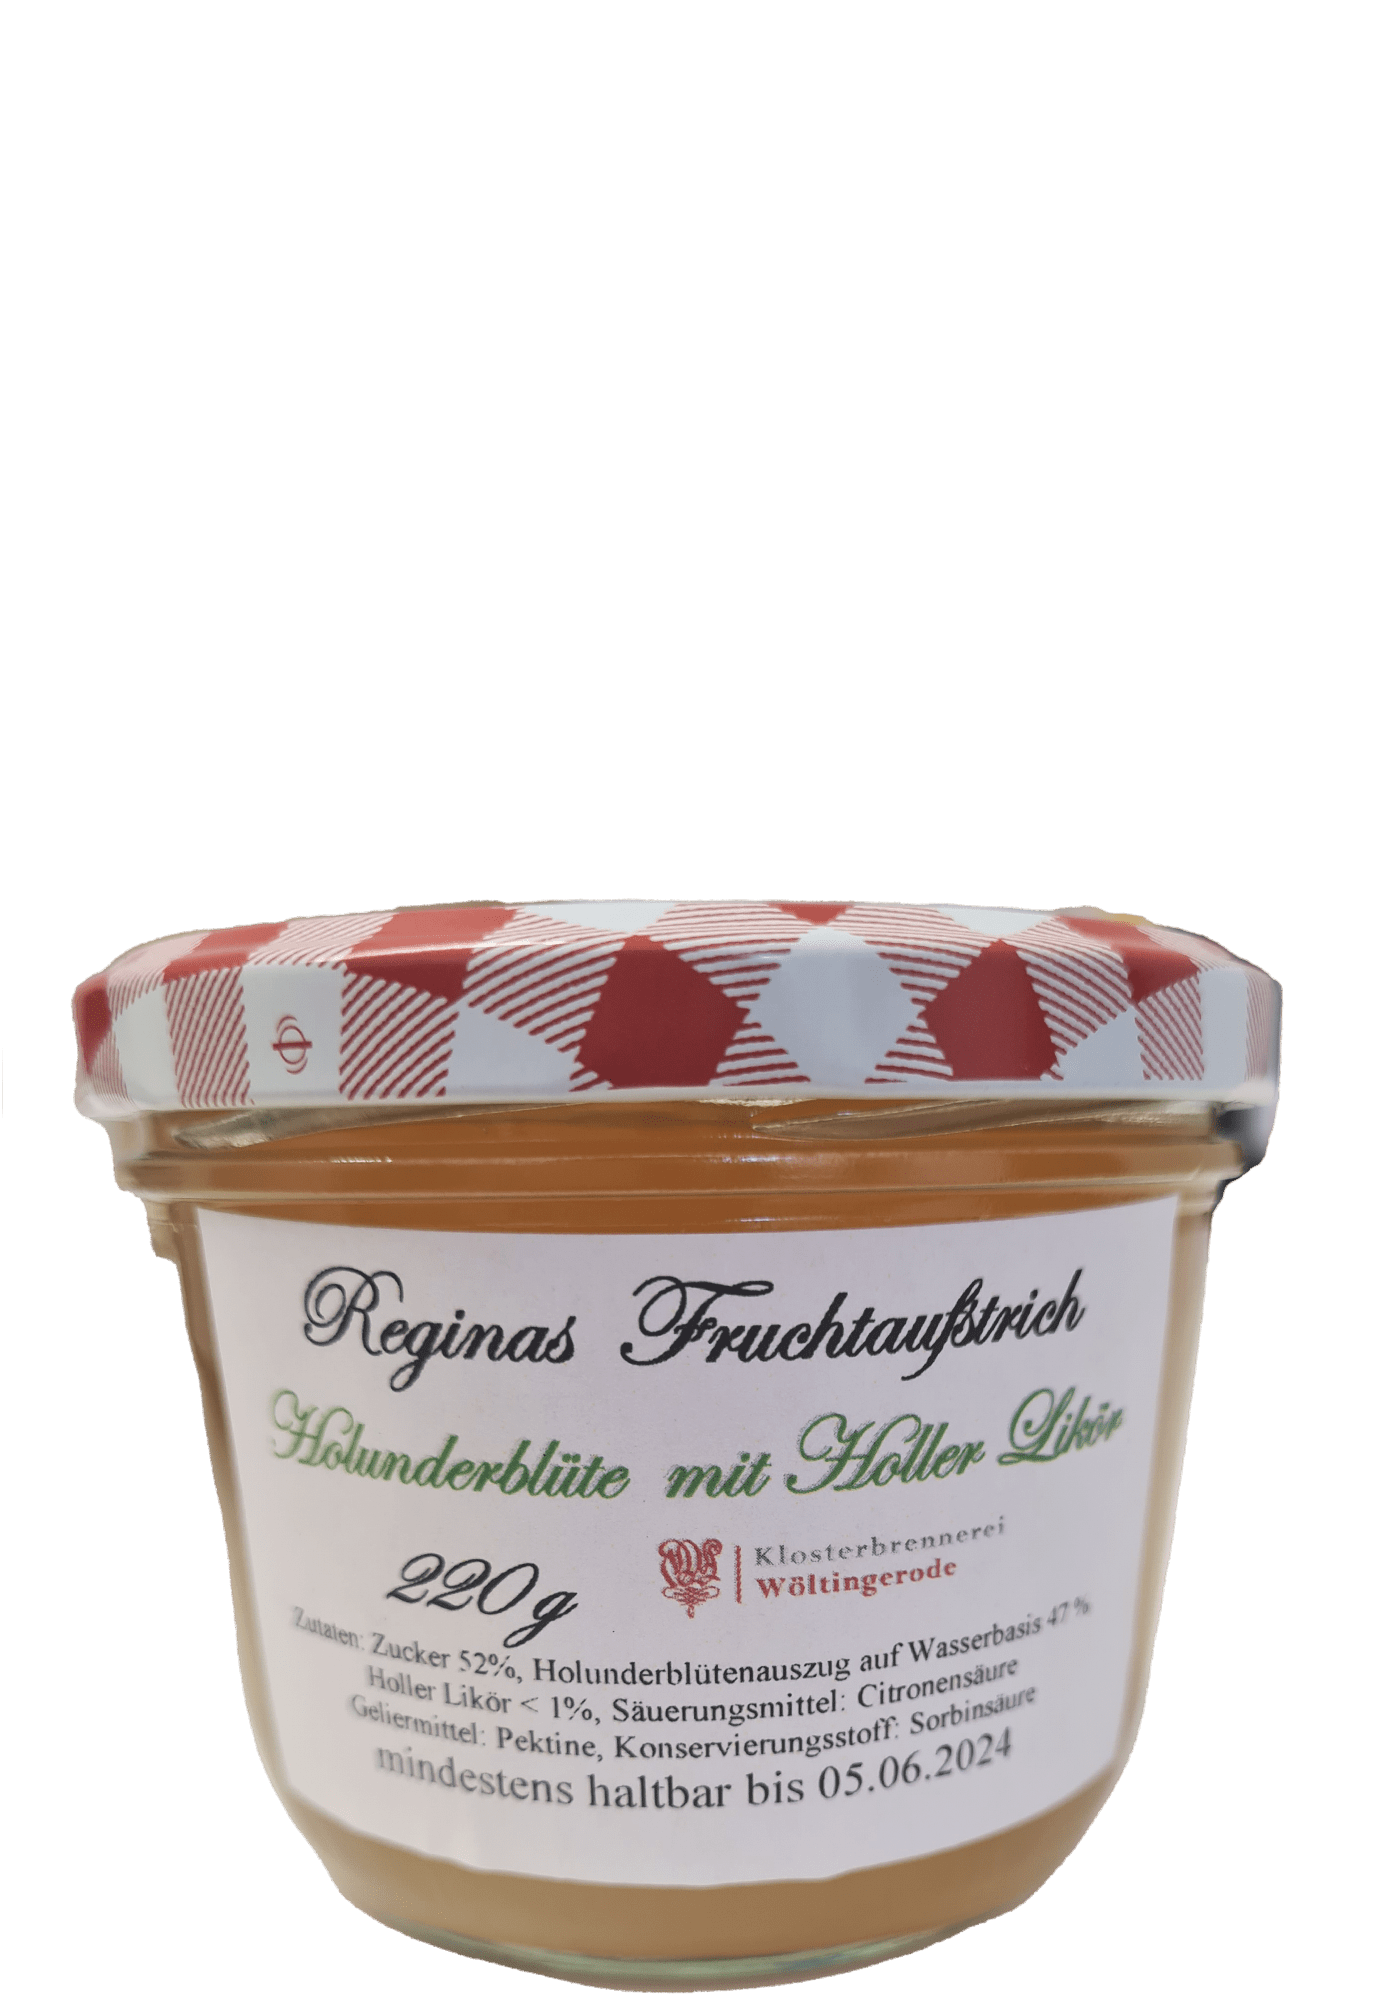 Reginas Fruchtaufstrich Holunderblüte mit Holler Likör Wöltingerode